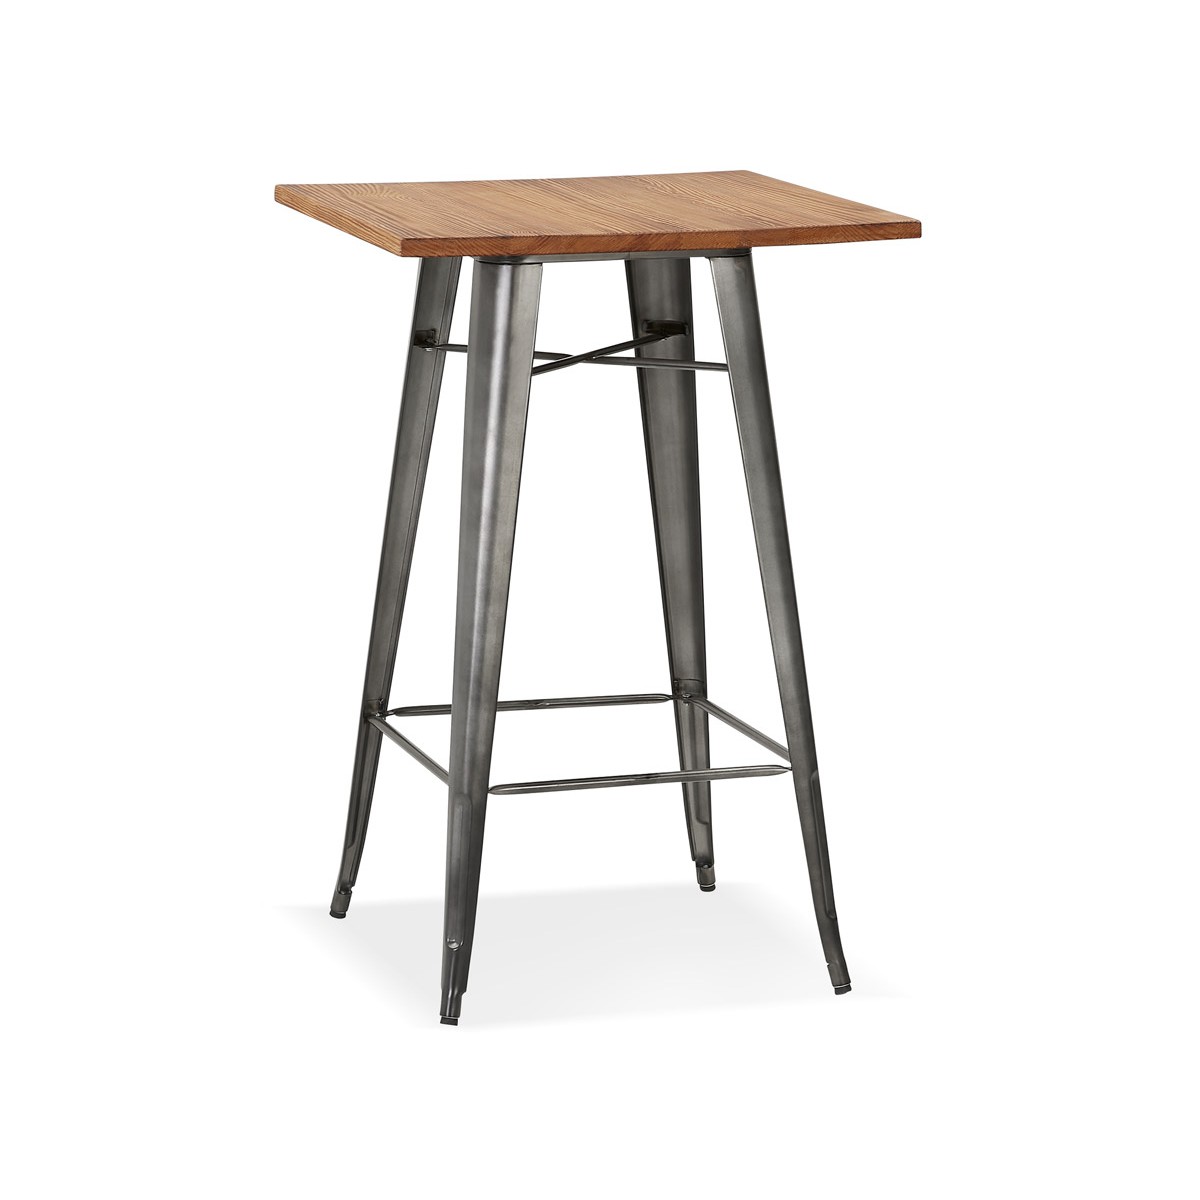 Base de mesa central de metal para mesas altas, pintura en polvo..